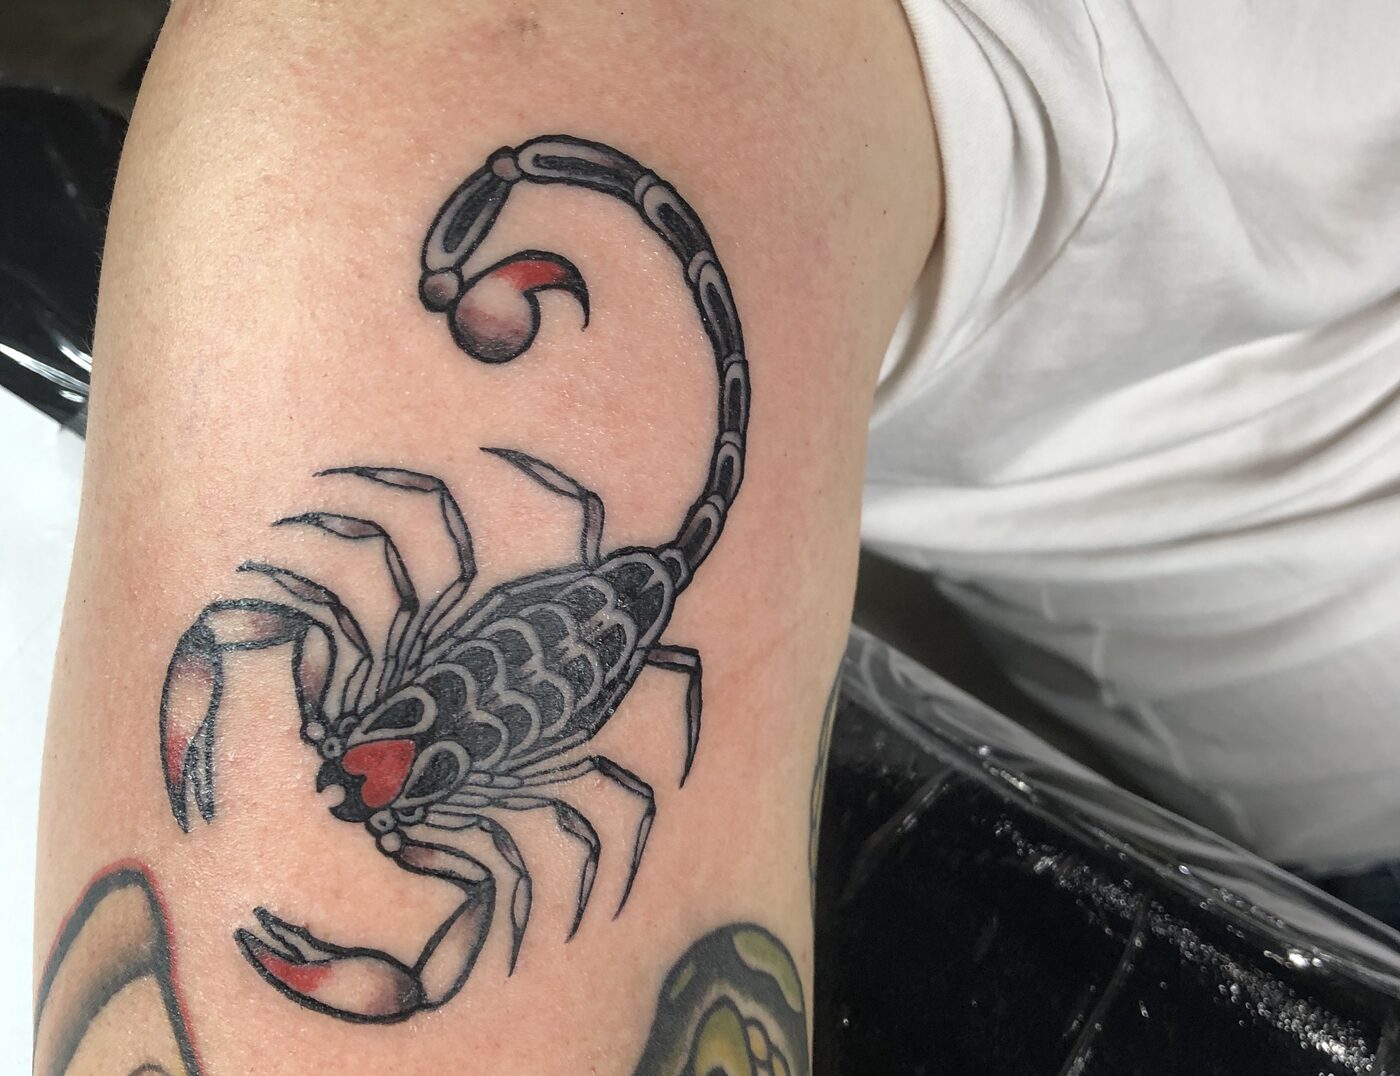 Traditional Scorpion Tattoo | Traditional Scorpion Tattoo cu… | Flickr